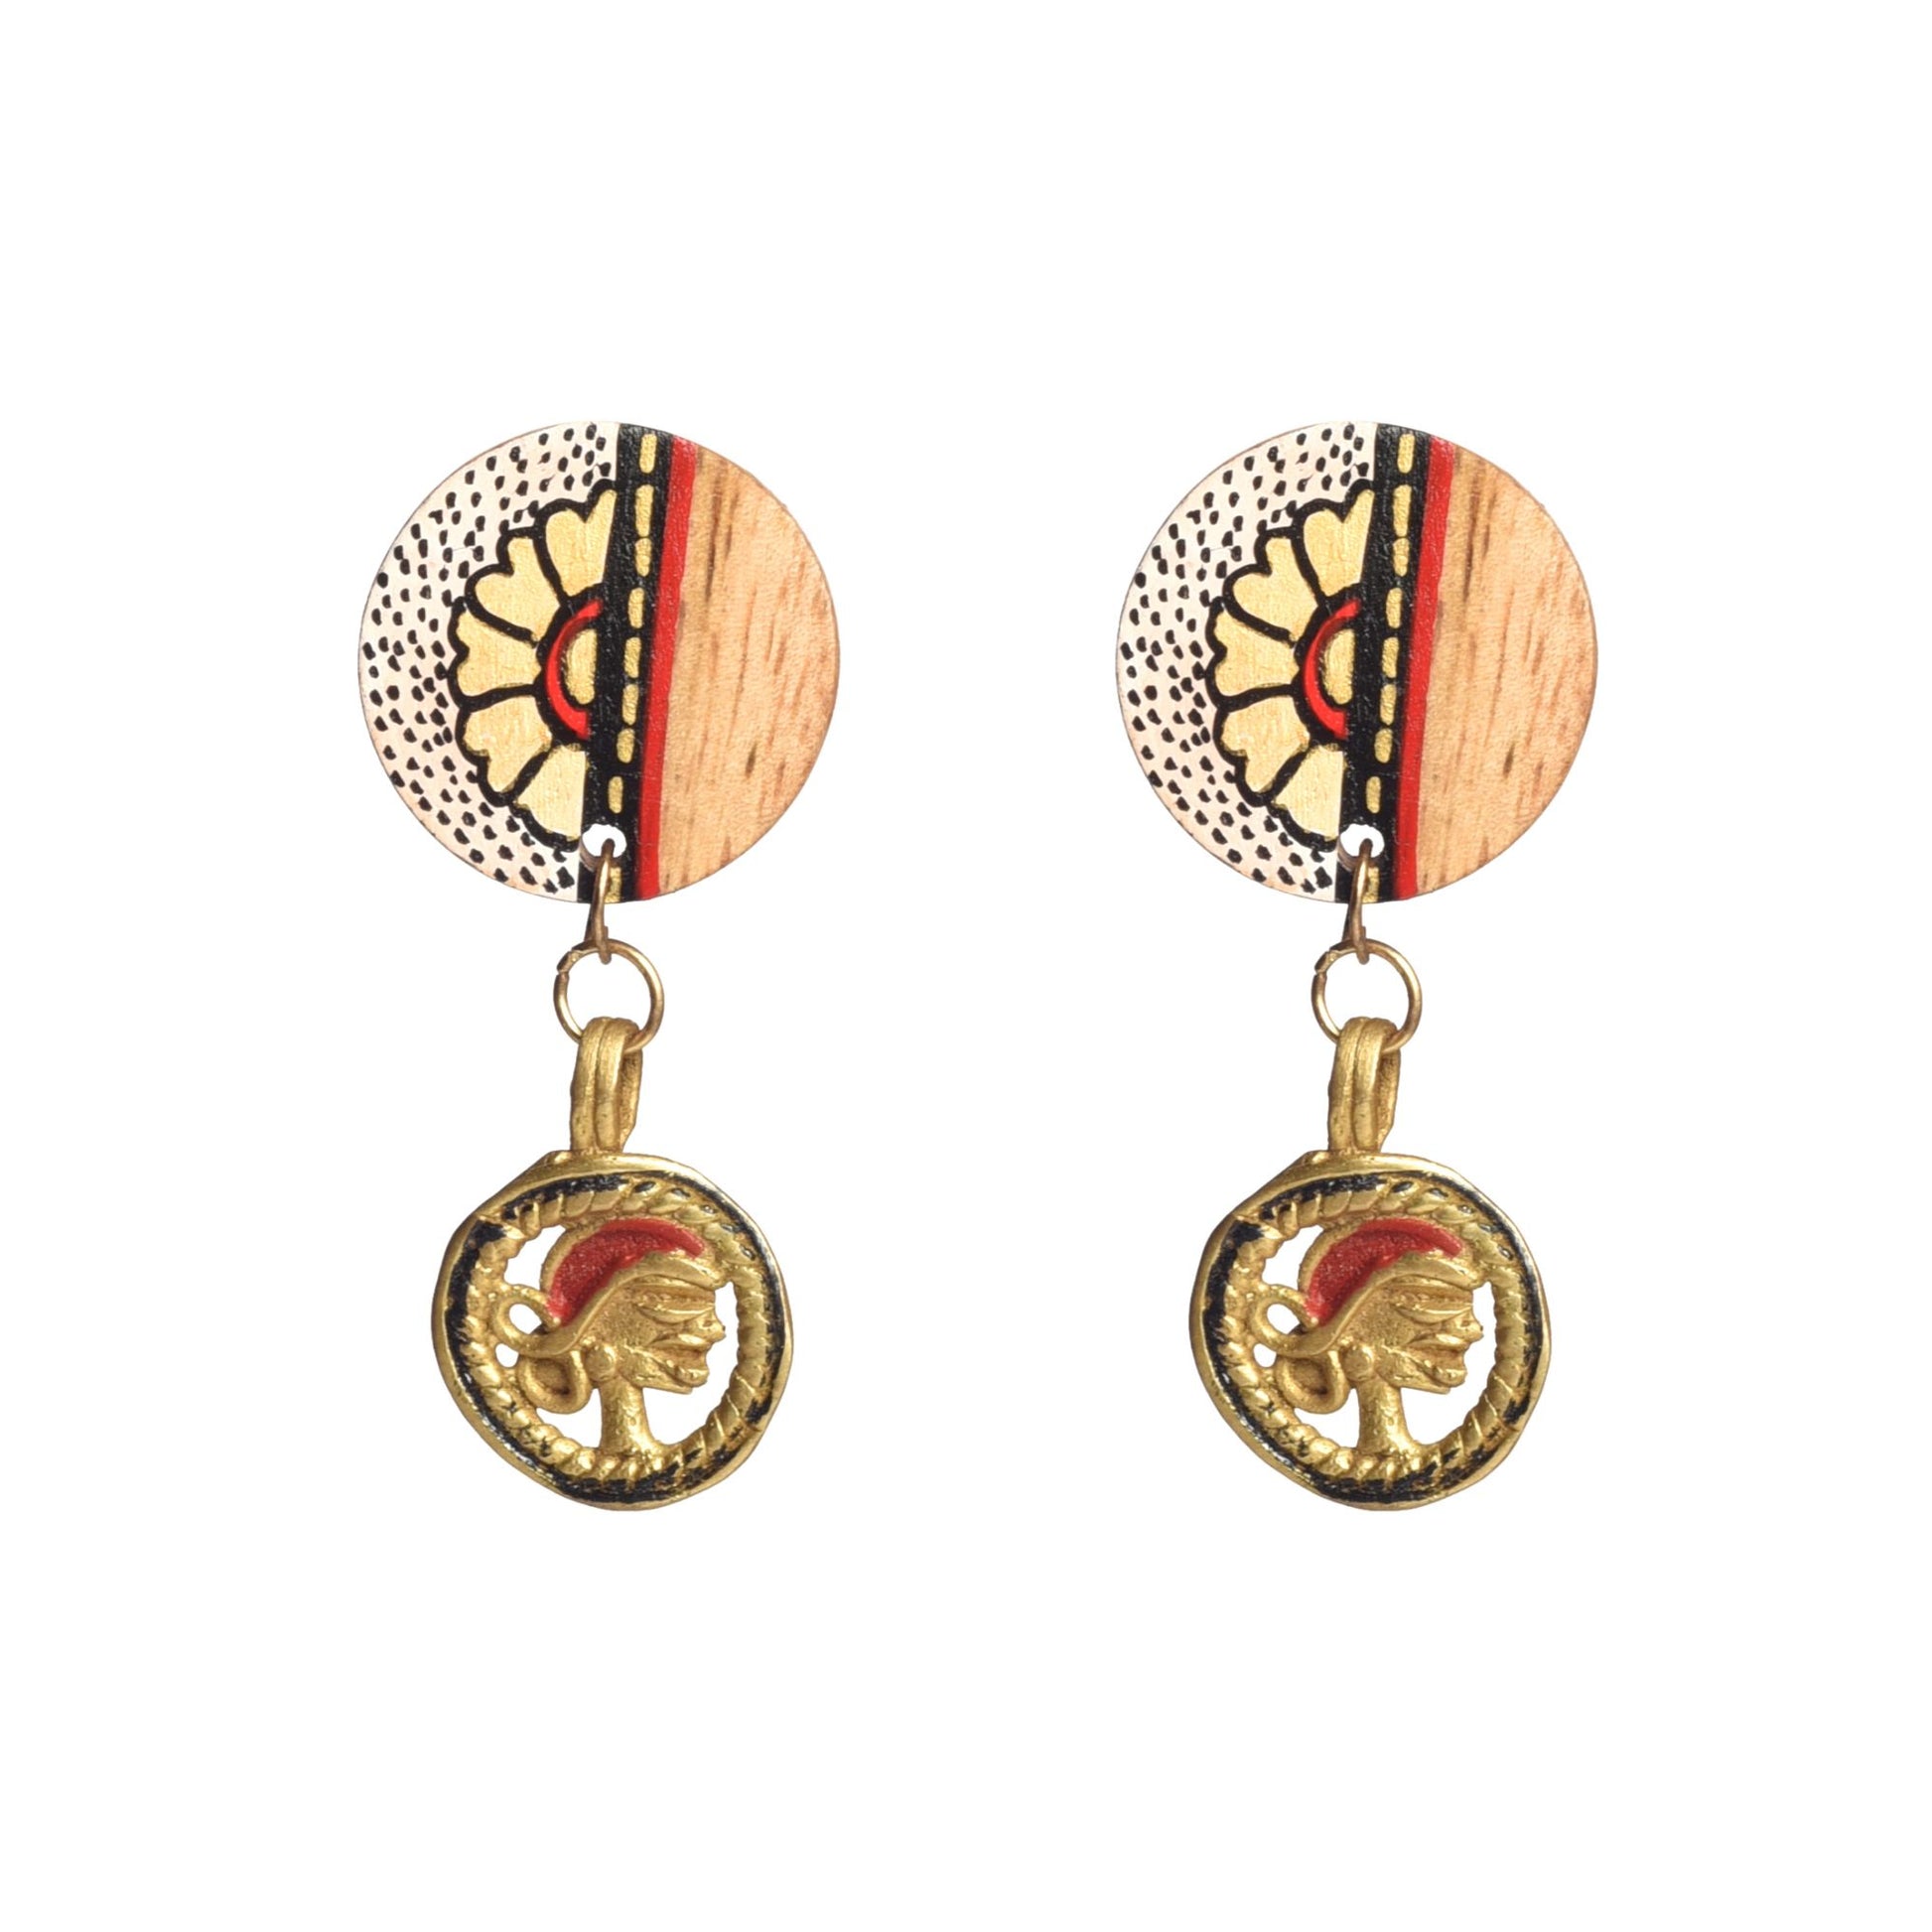 wooden earrings